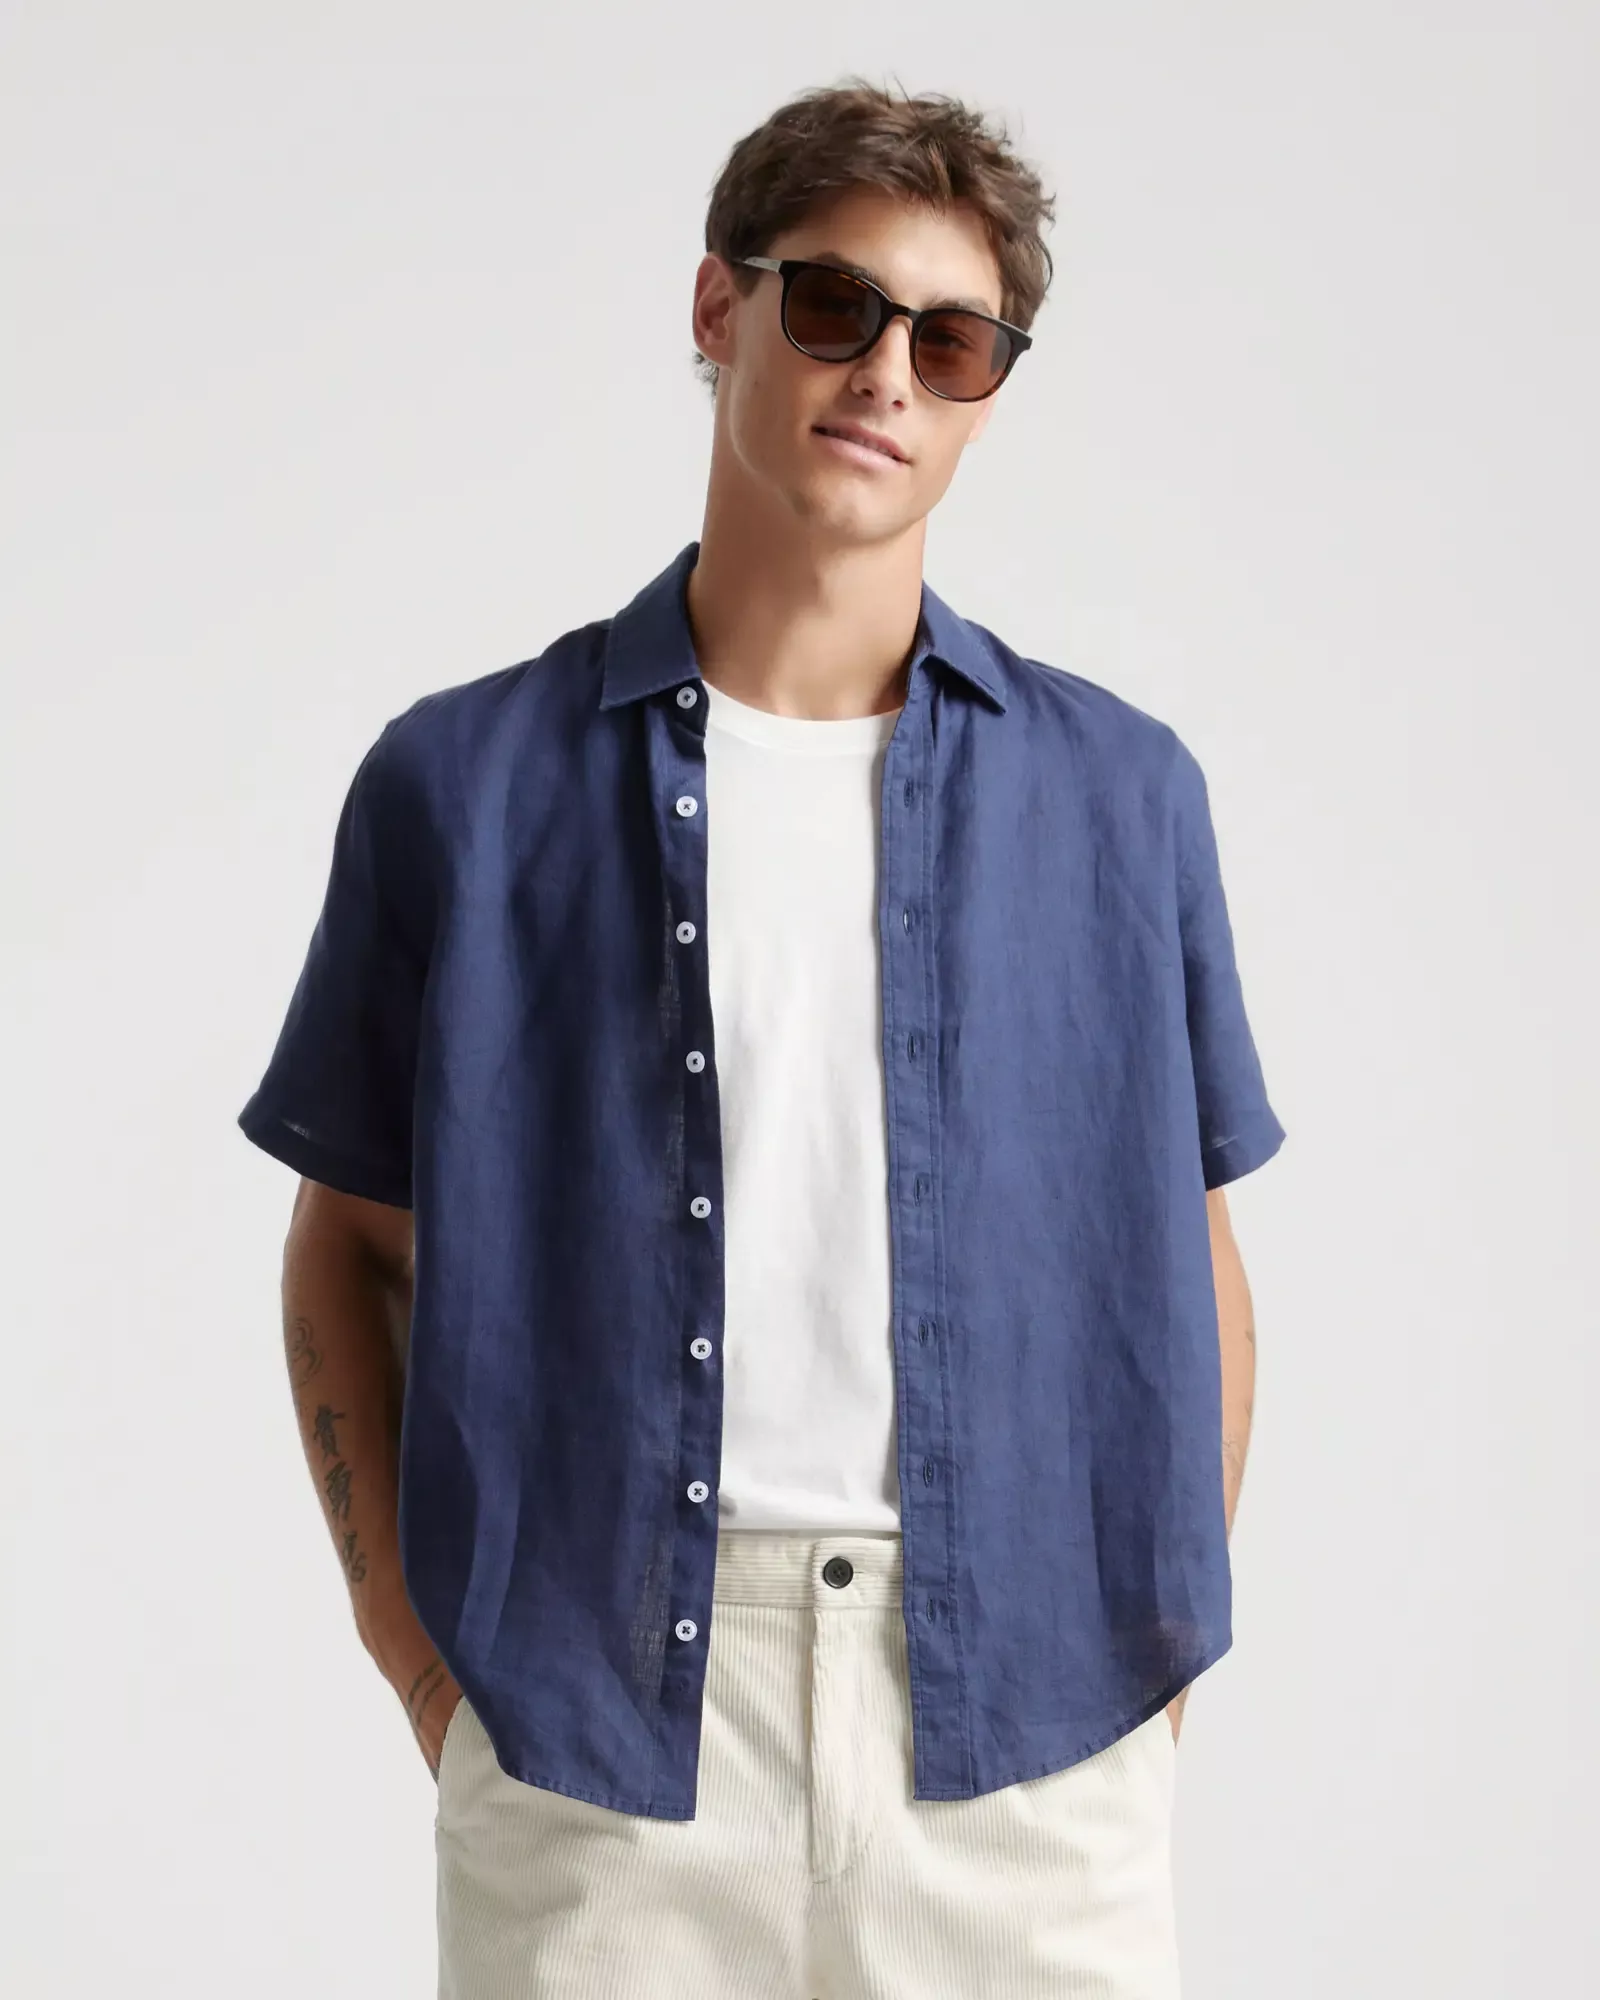 Men's 100% European Linen Short Sleeve Shirt